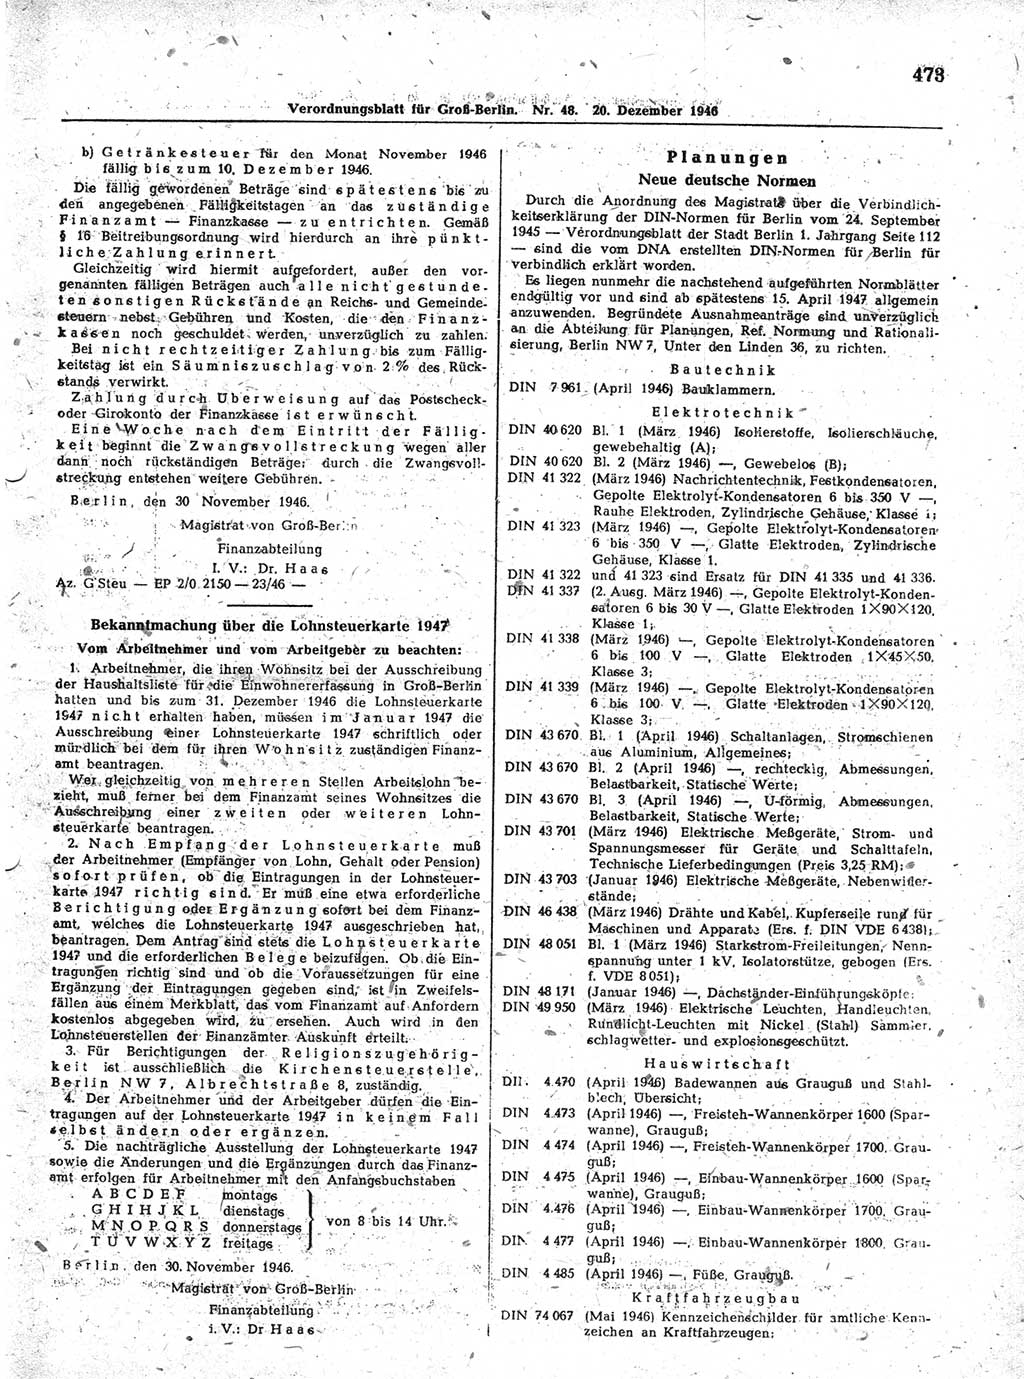 Verordnungsblatt (VOBl.) der Stadt Berlin, für Groß-Berlin 1946, Seite 473 (VOBl. Bln. 1946, S. 473)